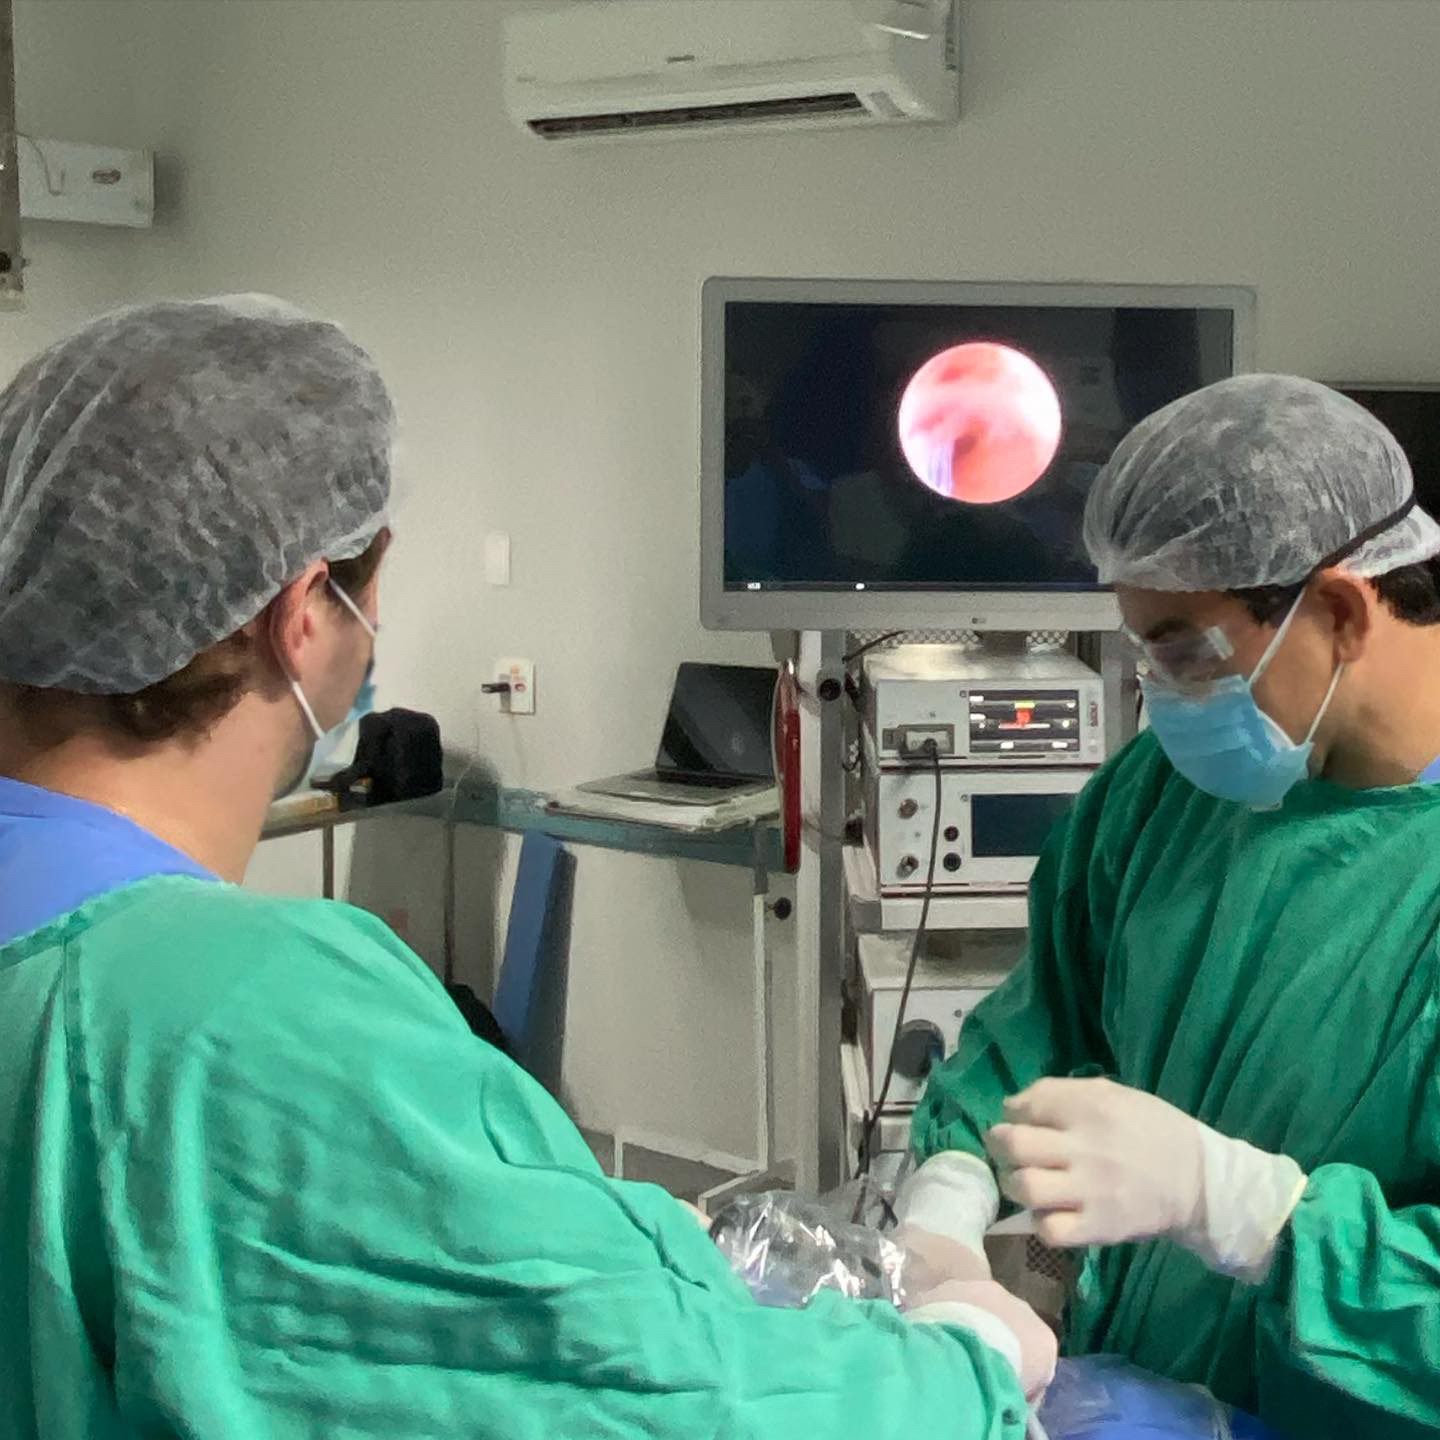 Procedimento inédito na região foi realizado na Santa Casa pelo cirurgião bucomaxilofacial, Thiago Freire Lima 